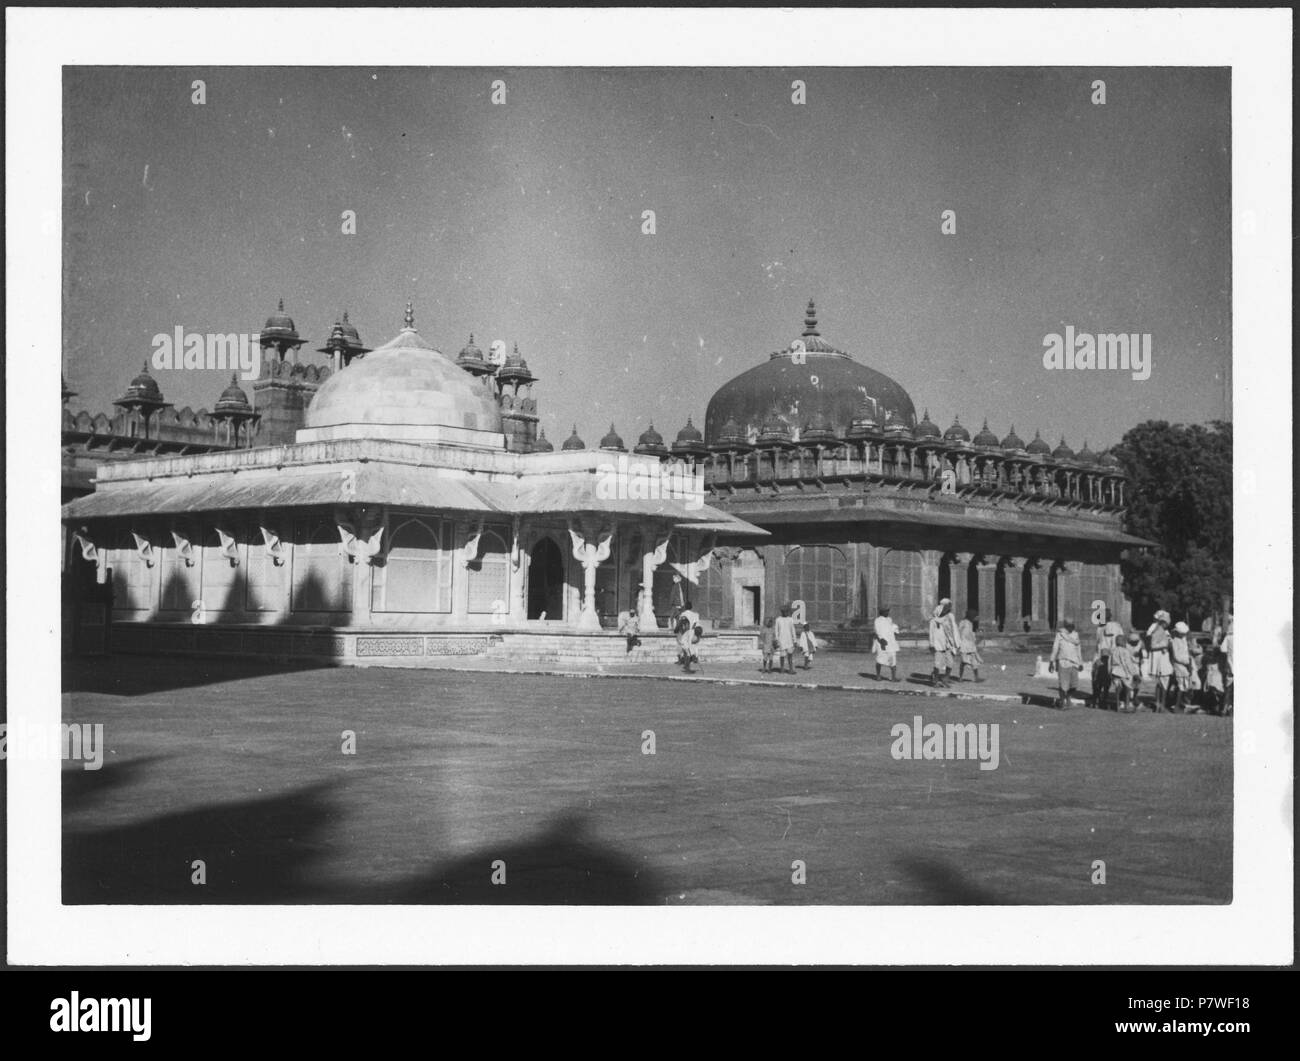 Britisch-Indien, Fatehpur Sikri: Palast; Ein weisses einstöckiges Gebäude. Von 1939 bis 1940 68 CH-NB-Britisch-Indien, Fatehpur Sikri-Palast - Annemarie Schwarzenbach - SLA-Schwarzenbach-A -5-22-100 Stockfoto